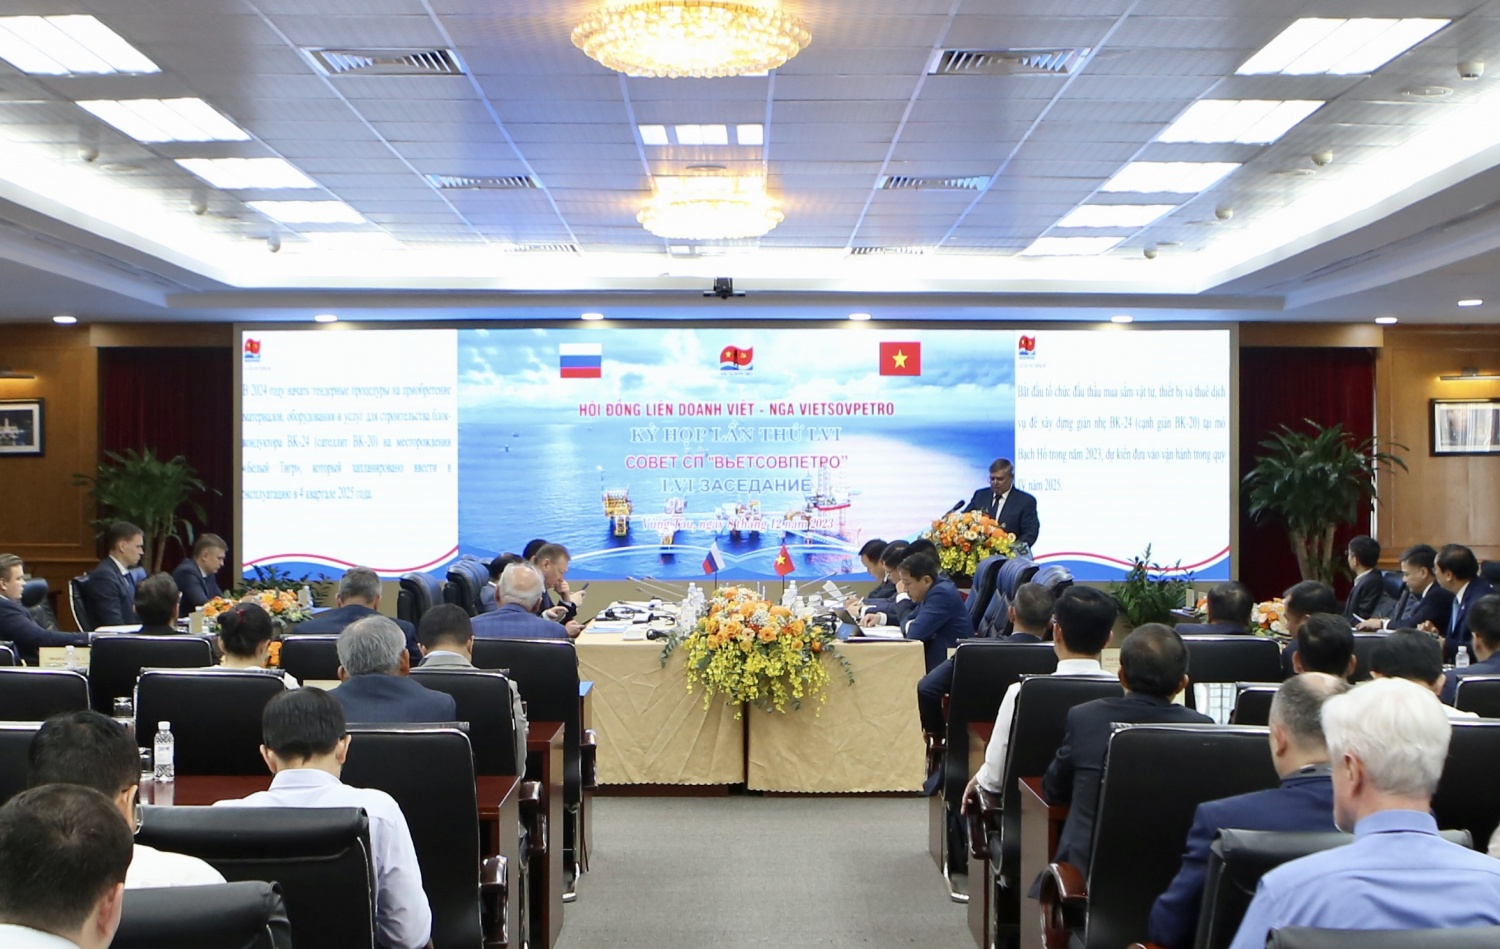 Kỳ họp 56 Hội đồng Liên doanh Việt - Nga Vietsovpetro thành công tốt đẹp